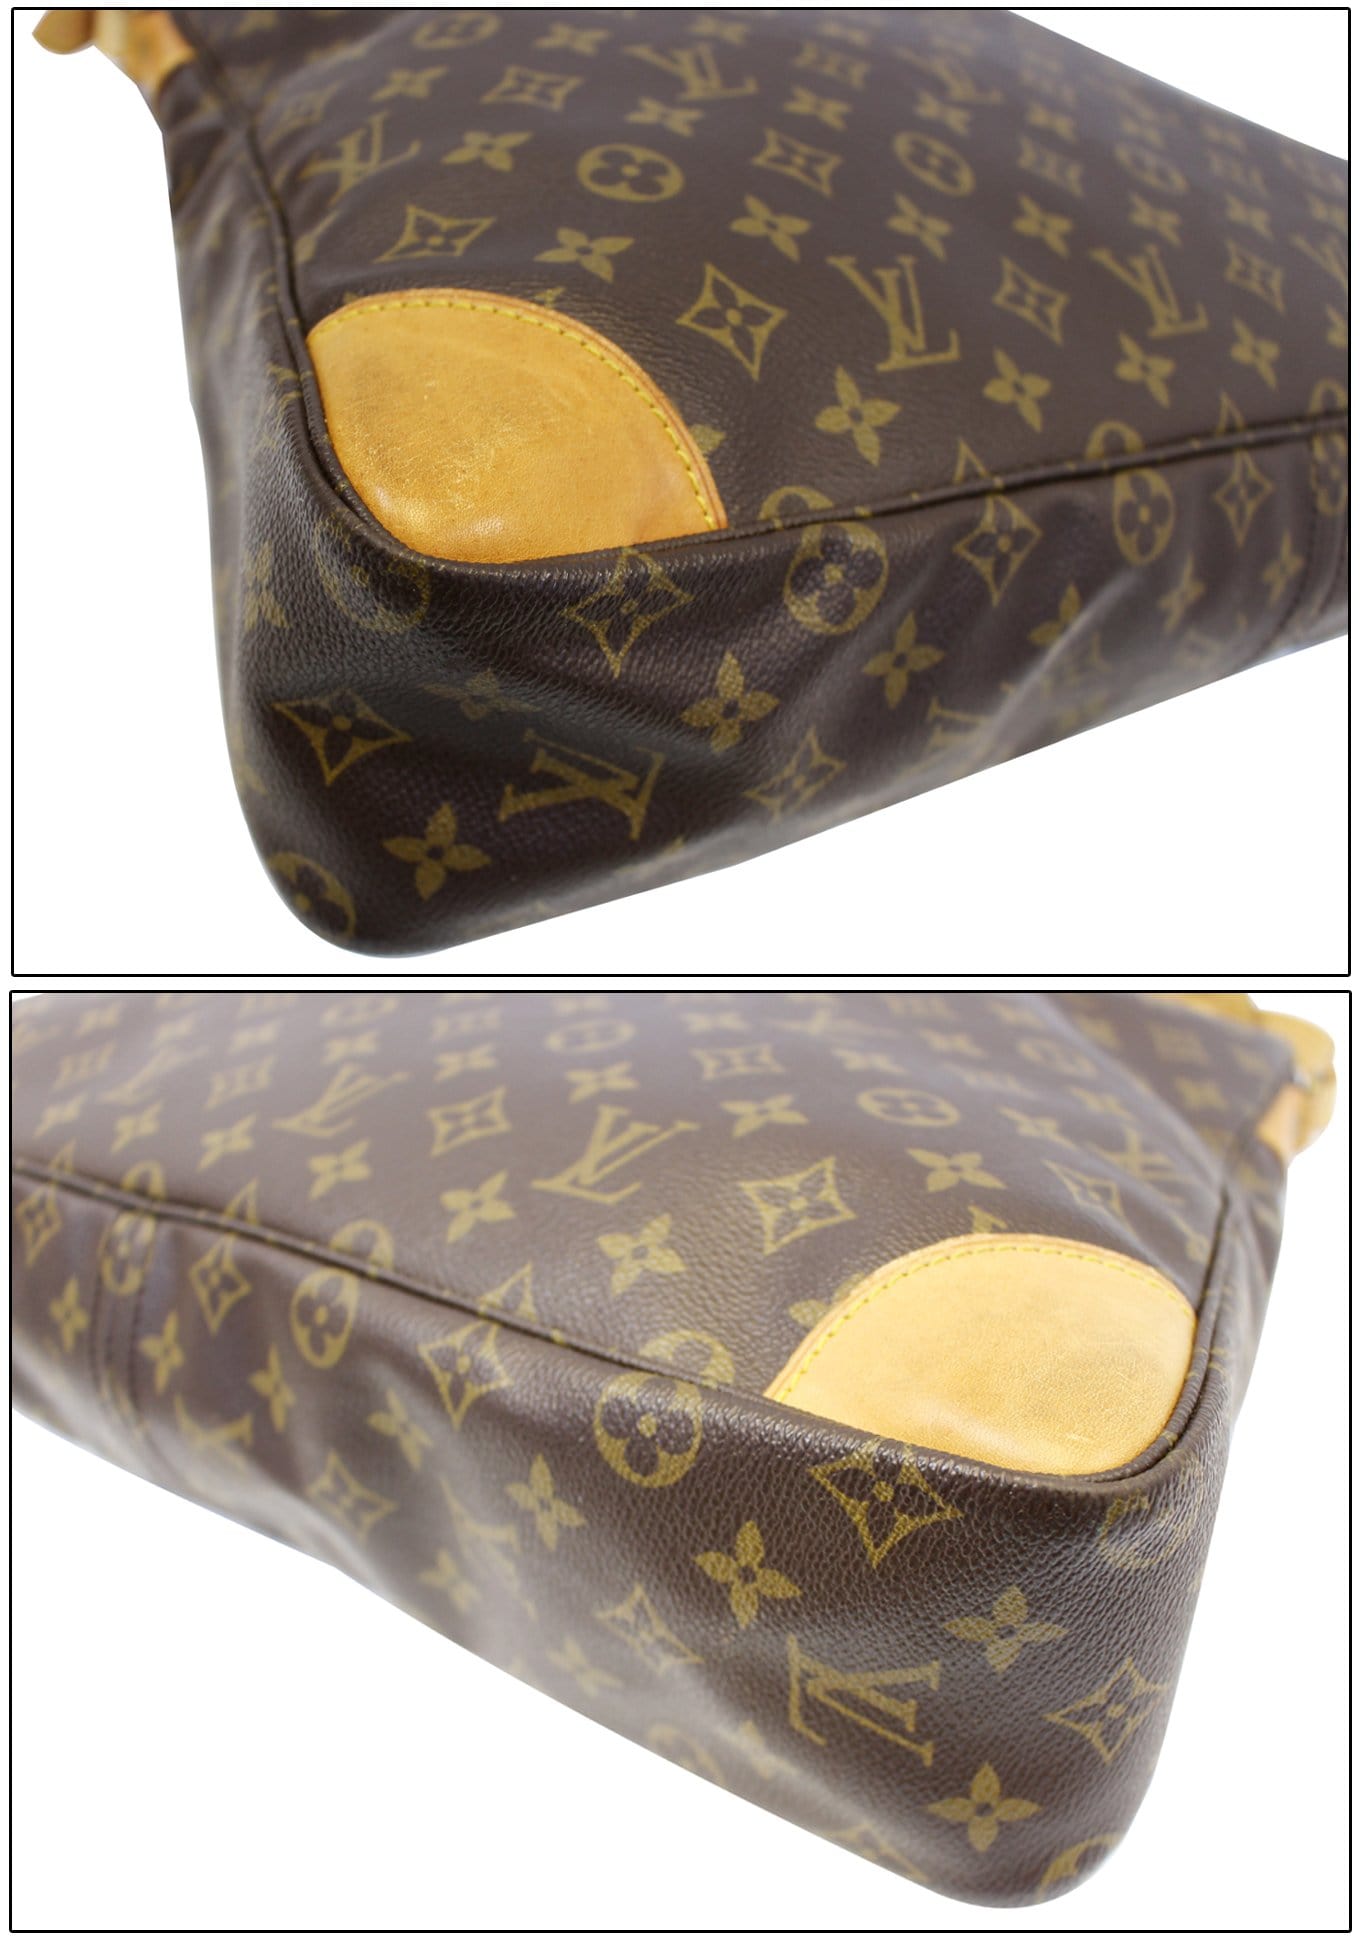 Louis Vuitton XL Monogram Sac Promenade Ballade Hobo Shoulder Bag 8LV1025